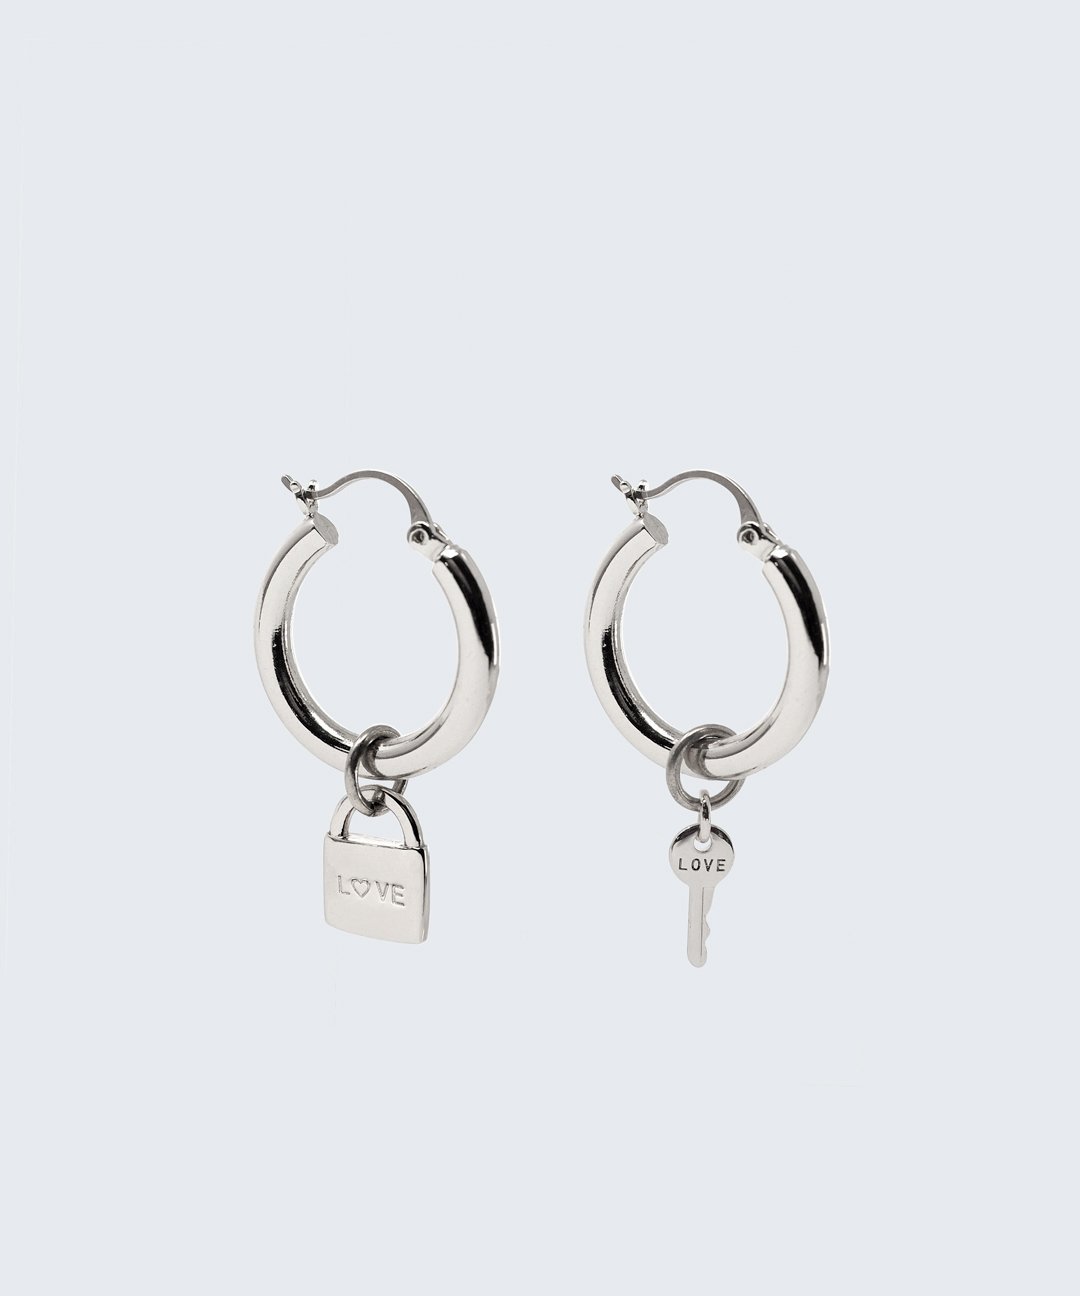 Riji Earrings Earrings The Giving Keys LOVE + LOVE Silver 